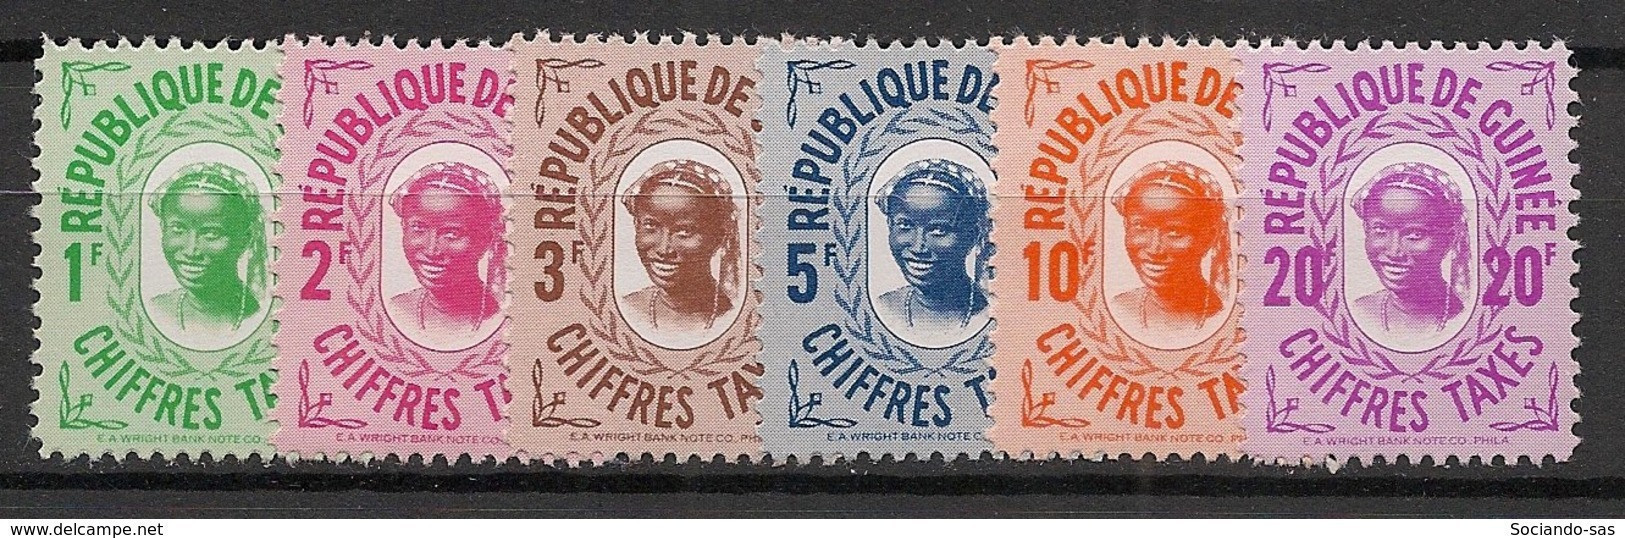 GUINEE - 1959 - Taxe TT N°YT. 7 à 12 - Série Complète - Neuf Luxe ** / MNH / Postfrisch - Guinea (1958-...)